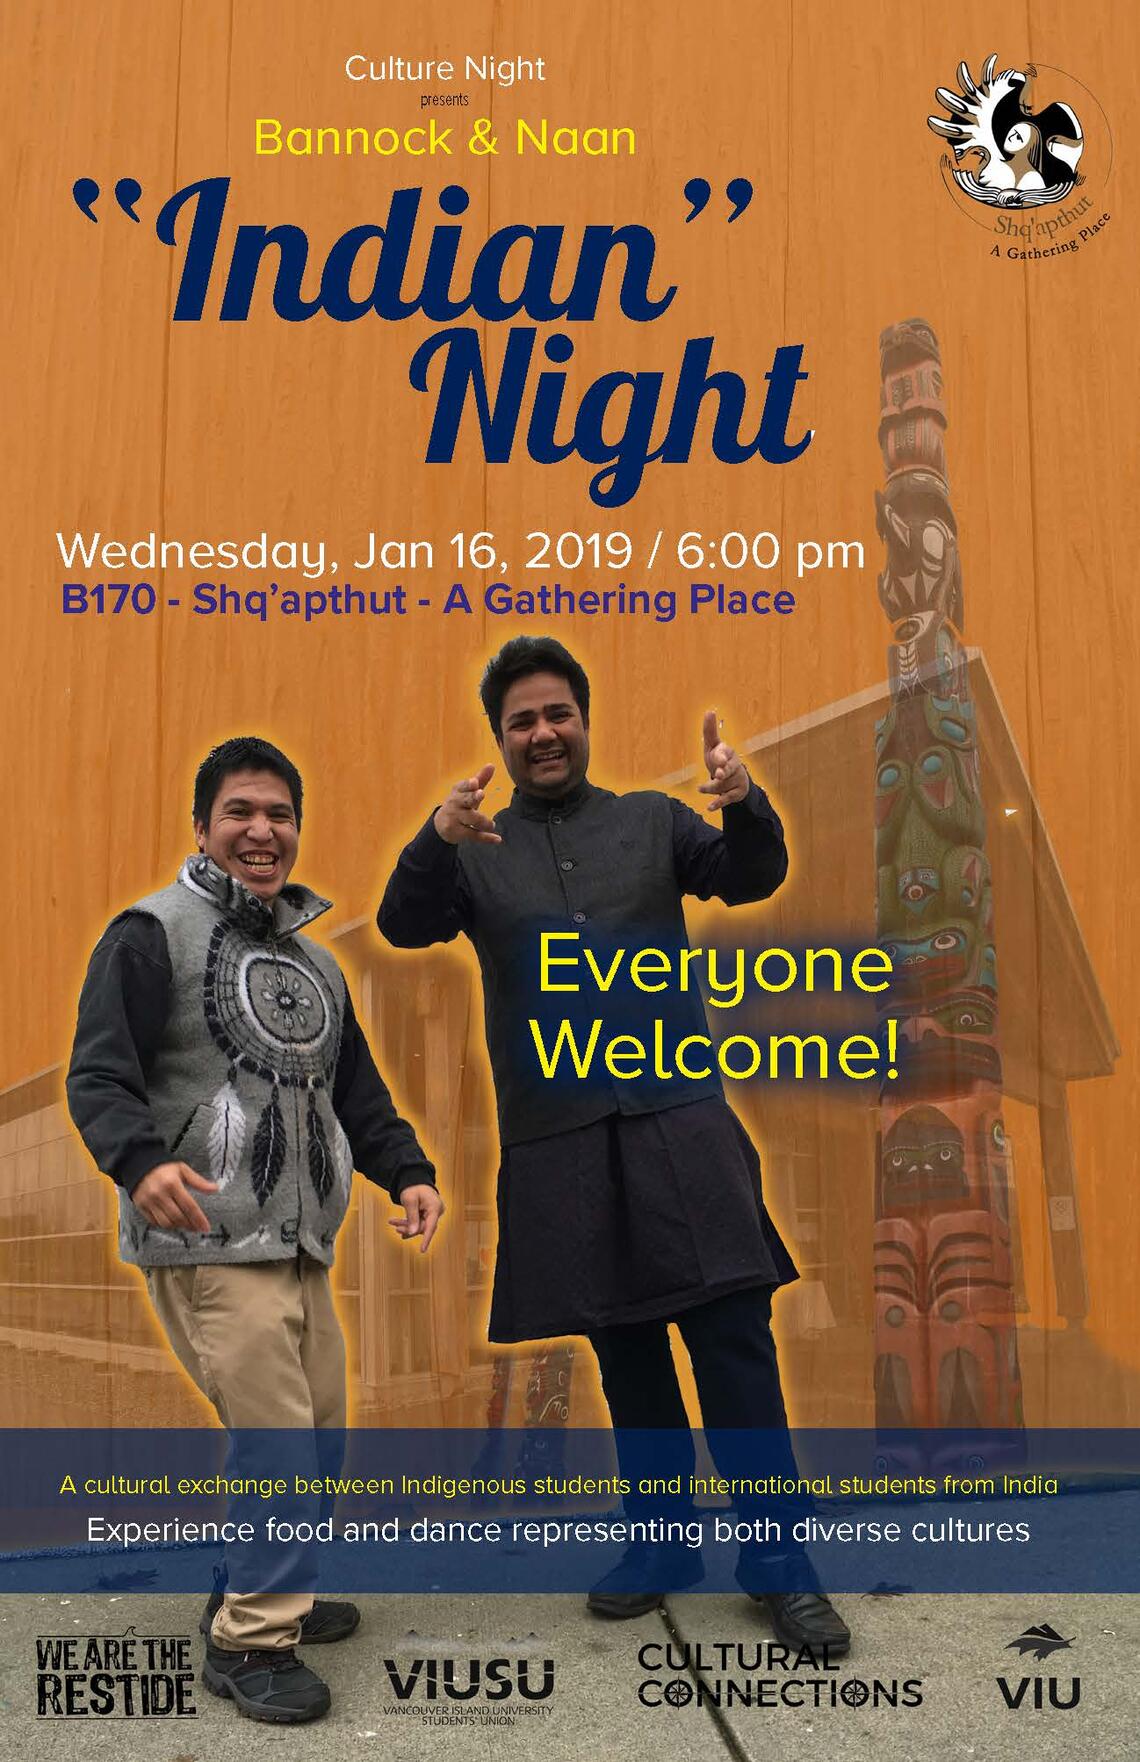 VIU Bannock & Naan "Indian" Night 2019 Poster